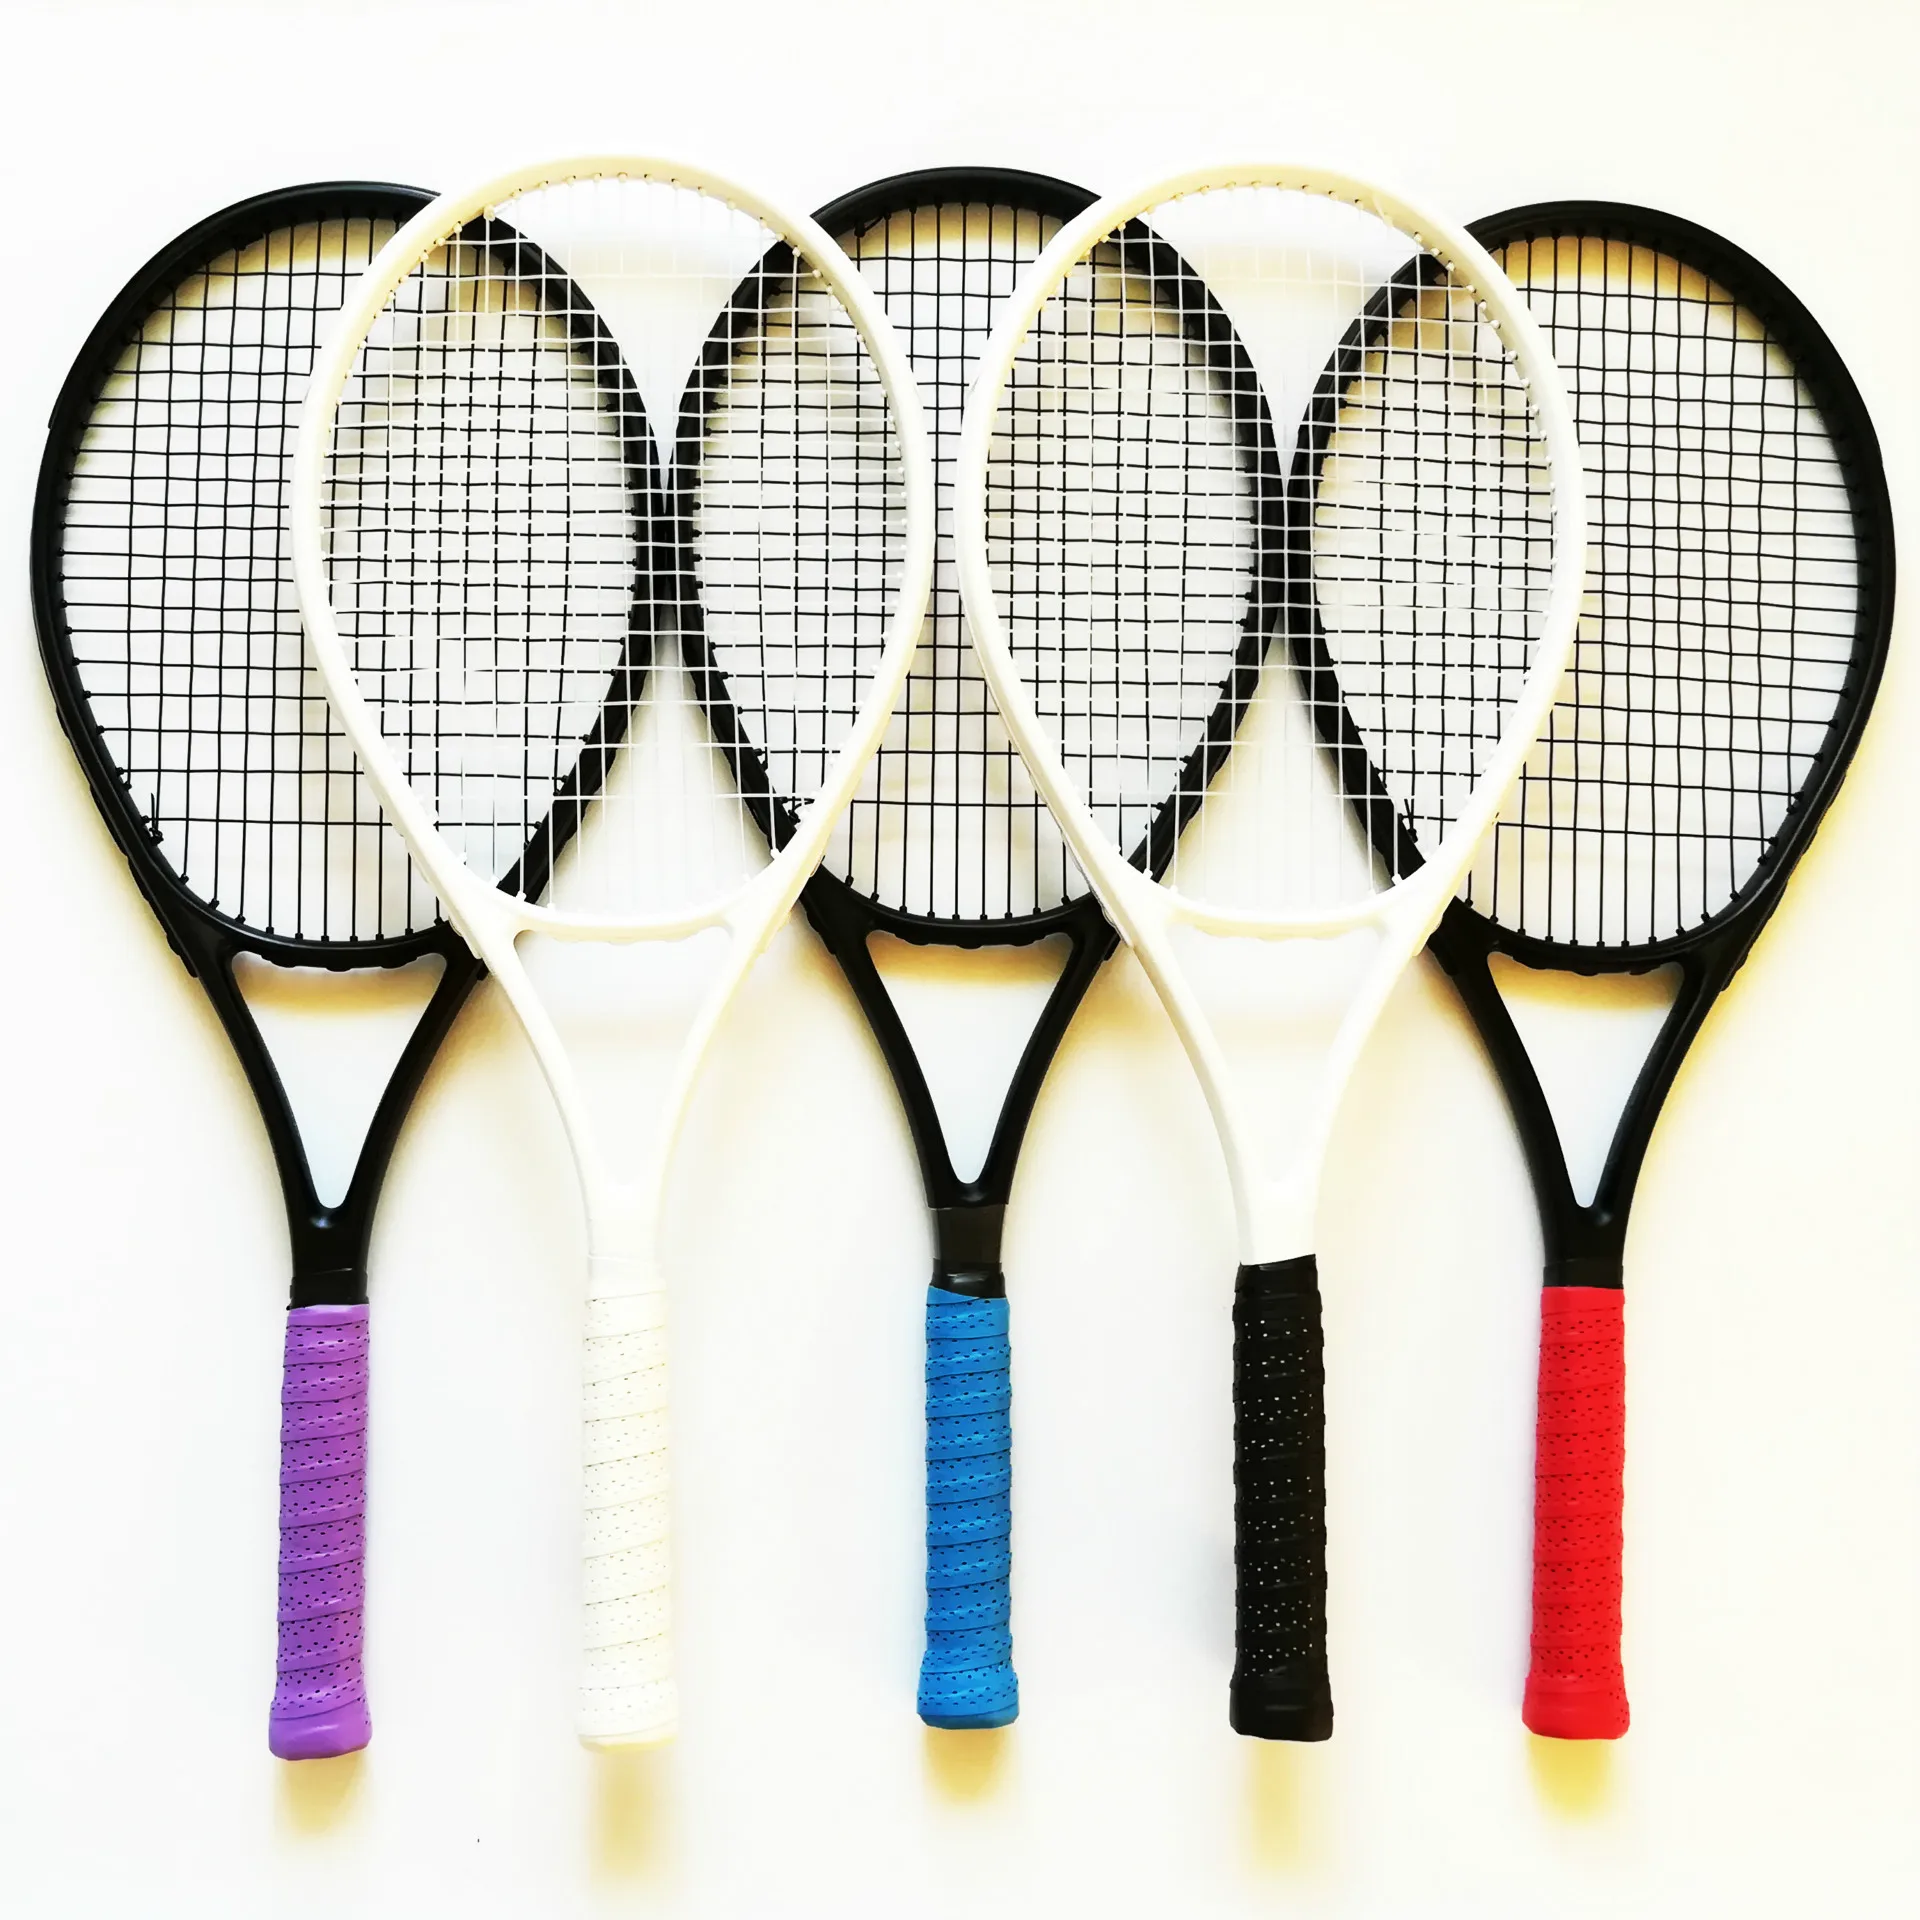 

Теннисная ракетка взрослые новички прочная полностью карбоновая тренировочная Одиночная ракетка теннисная сумка для тенниса ульсветильн...